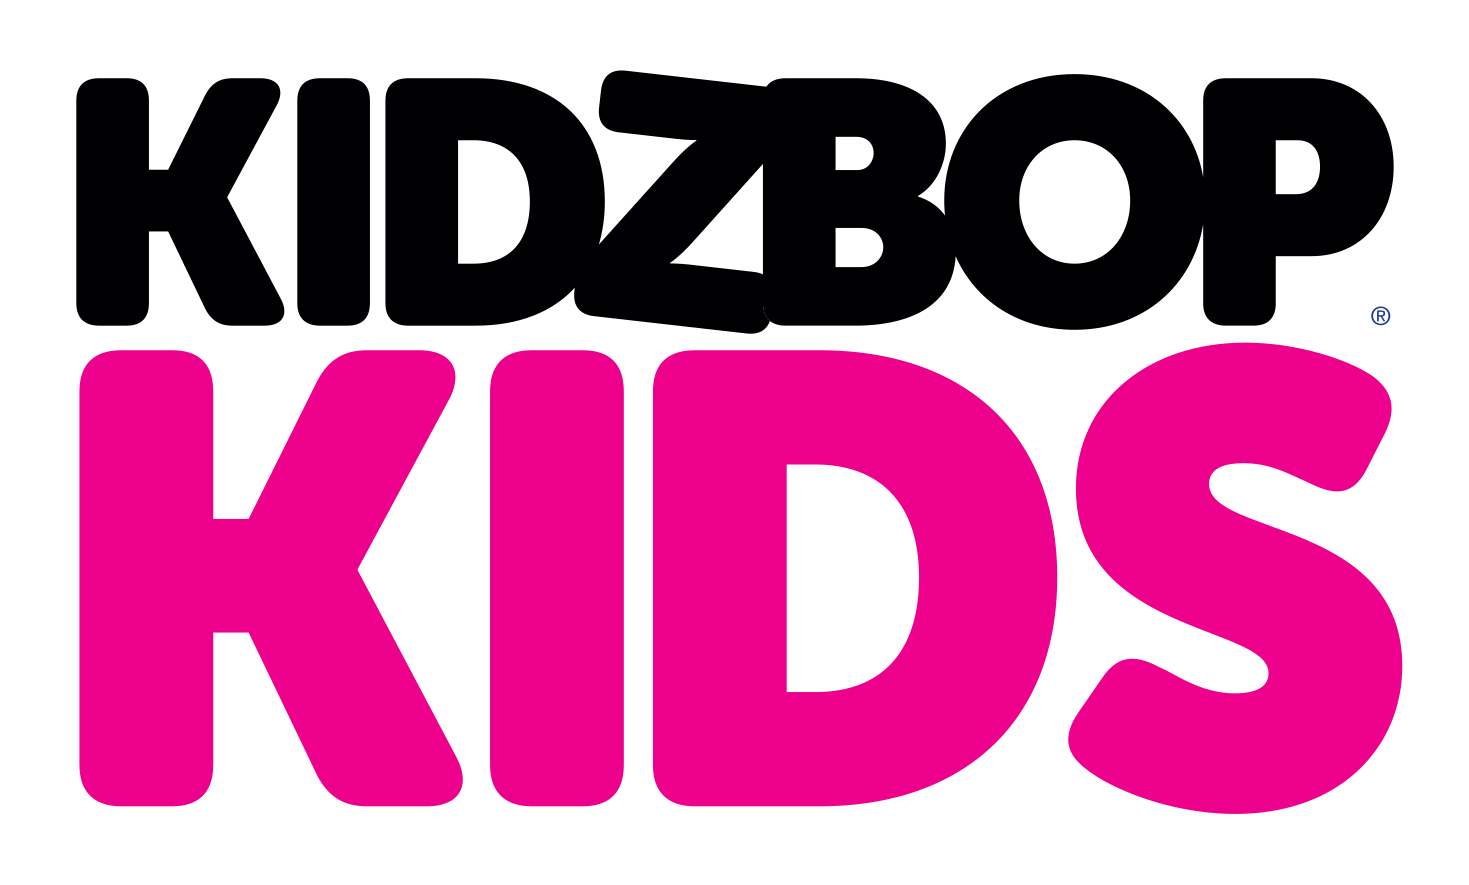 Kidz bop Logos